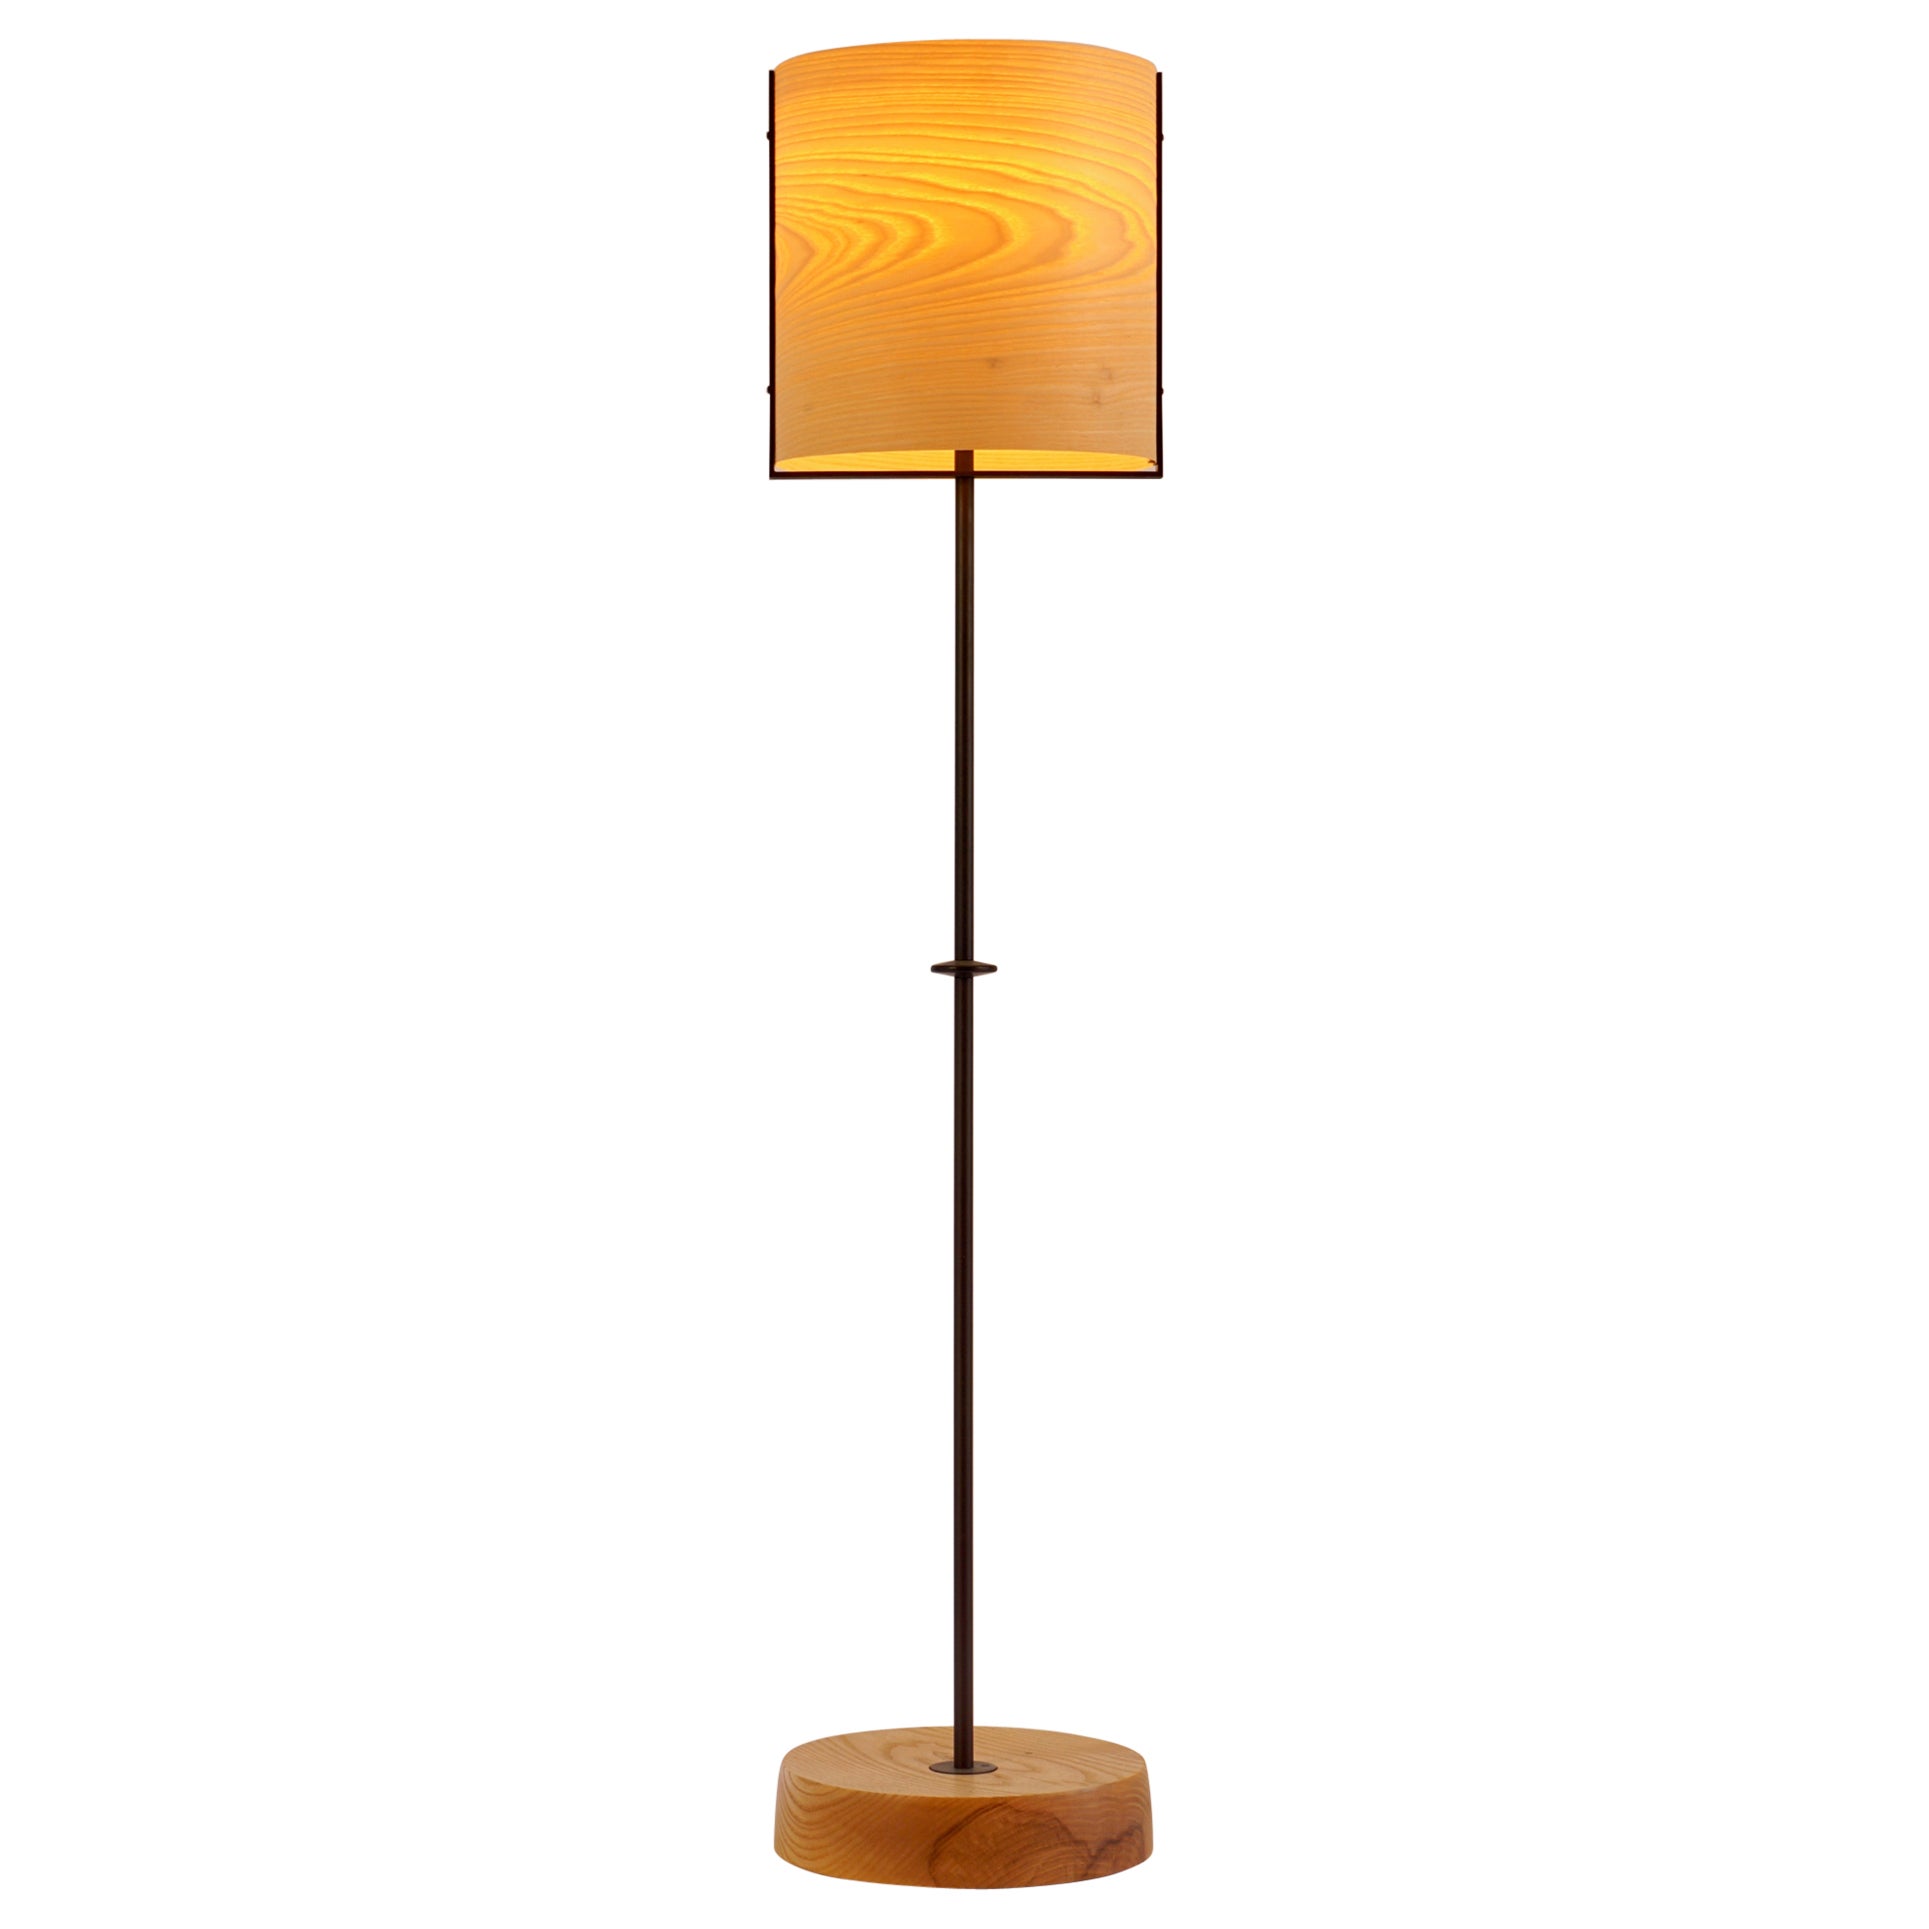 Ash Wood Veneer Floor Lamp #8 with Blackened Bronze Frame